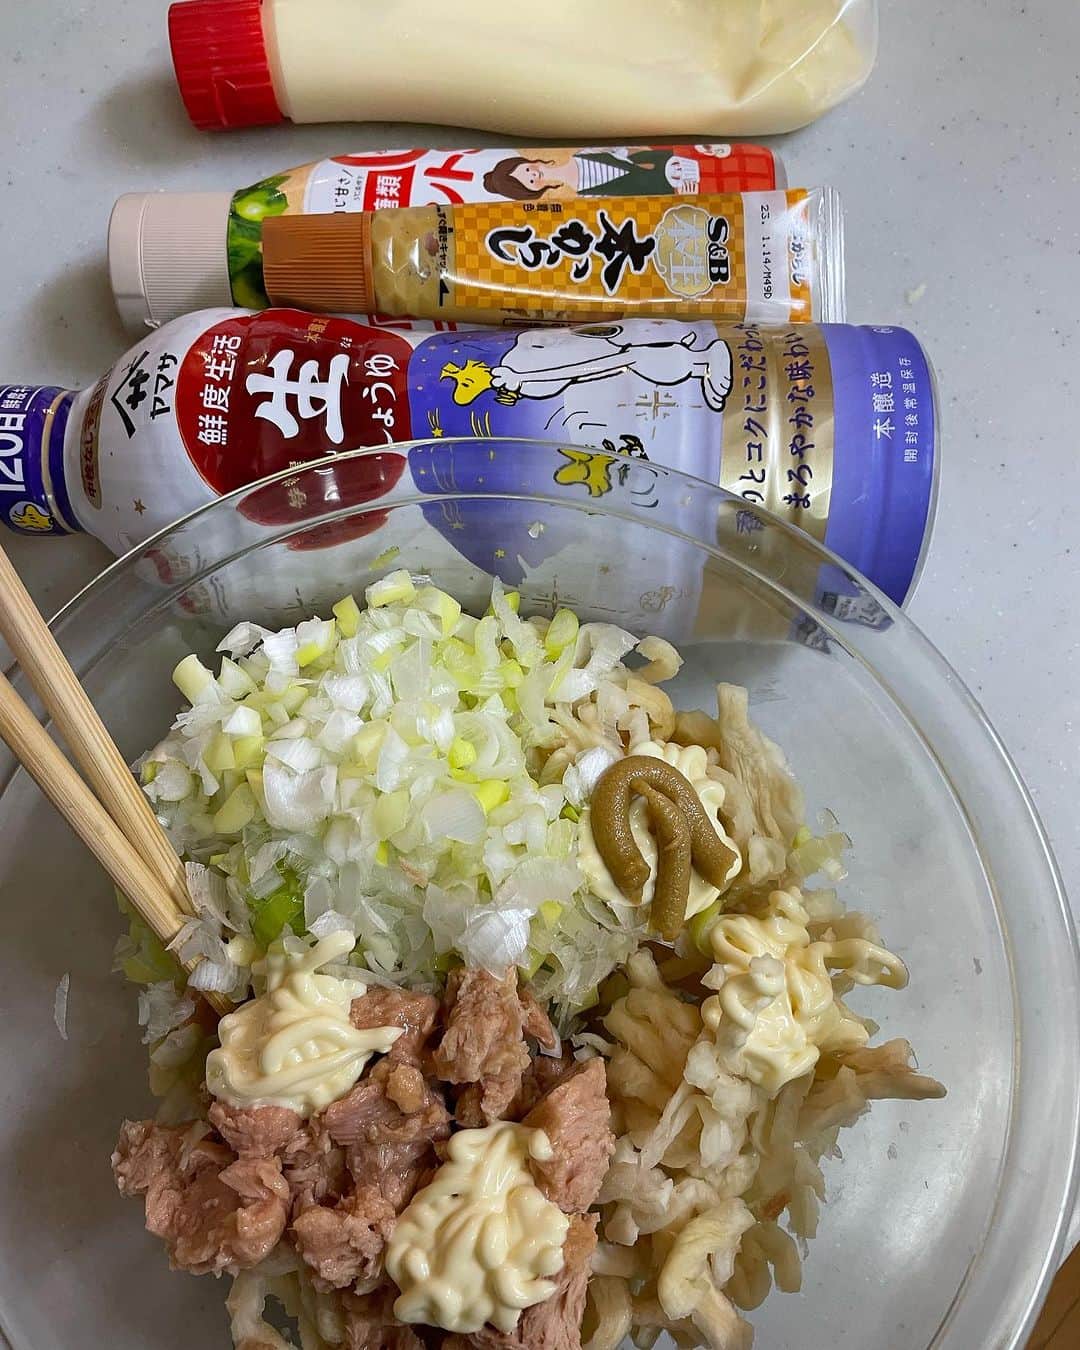 飯島直子さんのインスタグラム写真 - (飯島直子Instagram)「こんばんは^ - ^♪  花木いかがお過ごしですか  祭日と聞くと、明日が土曜と勘違いしてしまいそうです^ - ^  今日は汗ばむ陽気でしたね  汗はかいてませんが、すこしキモチに余裕があったので切り干し大根のサラダを作りました  ツナ缶とネギ、マヨネーズ、しょうゆ、からし、塩胡椒だけのカンタンなものです  日もちもして、ポリポリまあまあおいしいです  三日以降はあまり手がのびませんが^_^  31.1.2日のへんじすこしです＾＾  mamako_ys６３才誕生日おめでとう♪ 人生で今日が一番若い日^ - ^たくさんのことに挑戦して豊かな人生を送くろう♪健康に気をつけステキな一年にしてね♪ 挑戦したいこと…なんだろ^ - ^なんでも！  hiromi.t56才誕生日おめでとう♪介護中の両親に忘れられても…5人の子供たちからたくさんのお祝い♡ うれしいね^ ^いくつになっても年を重ねていける事は感謝だね^_^健康に気をつけて良い一年になりますように♪  eri.take.tada.y.t母８３才誕生日おめでとう♪ 甥っ子１０才♪土曜日誕生日会！忙しくなるね^ - ^ みんなでお祝いステキな時間過ごしてね♪ 元気で長生きしてね^ - ^  caori_４３才誕生日おめでとう♪あらら…キライな夫と、夫キライな思春期の娘と温泉旅行で憂鬱^^; 薬の準備やもろもろ大変だけど…ここはひとつ、 割り切って楽しんできちゃおう！行ってしまえば案外楽しめたりする^ - ^眼、大事にしてね ステキな一年になりますように♪  明日は息子の結婚式で東京に♪おめでとう！ 良い子に育った…立派な父親だった証だ^ - ^ 泣けちゃね^_^ステキな一日を過ごしてね♪ hideminamina！  jamster_junko！ココロ不調かな…？がんばりすぎないようにね(*´-`)オーナーは大変だから！  chikoちゃん来週退院おめでとう！良い決断したし 良い出会いまで^ - ^リハビリもがんばってね 孫と遊び、旅行…いっぱい叶えてね！  令子、クミコも…一緒にがんばろうねᕦ(ò_óˇ)ᕤ  花粉用のメガネしよう！そのみ！  りん♪  aki10297♡  kimichannoopy〜ちゃんと見てるよぉ〜^_^  ruminee929！なんと！ありがとう^ - ^♪ すきなラーメンは…サッポロ一番塩と味噌、うまかっちゃんだよ！  まさかの息子フットサルに参戦！おつかれ^ - ^ すみか！腰大丈夫？！  母が認知症一人暮らし、特養老人ホームに…罪悪感も うん、むずかしいよね…ただお母さんの安全確保するためには良い選択かなとおもう、 一度お母さん連れて見学へ行ってみたらどうかな？ 「ここは楽しい所」というイメージを持ってもらうために…、わたしが同じ立場になってもこの選択をするとおもう、お母さんの命を第一優先に 一歩踏み出してみよう…kaorin178！  真喜！頑張って歯医者いこう^ - ^  きくこと喜久恵♪  マッサージ寝てもいいの？ガセ！よかった(*´-`) ありがとう♪浜のぴょんぴょん！ソーラン節も泣けたね(´∀｀*)  ちえ！30年前にハワイで…声かけてよ^ - ^  阪神ファンのひとおめでとう^_^  すごい試合でした  両チームすばらしかったですね  テレビを見ていたらこんな時間に  今日も一日お疲れさまでした  寒暖差気をつけてね  みんなゆっくり眠れますように  おやすみなさい╰(*´︶`*)╯♡  また明日♡♡」11月2日 21時52分 - naoko_iijima_705_official